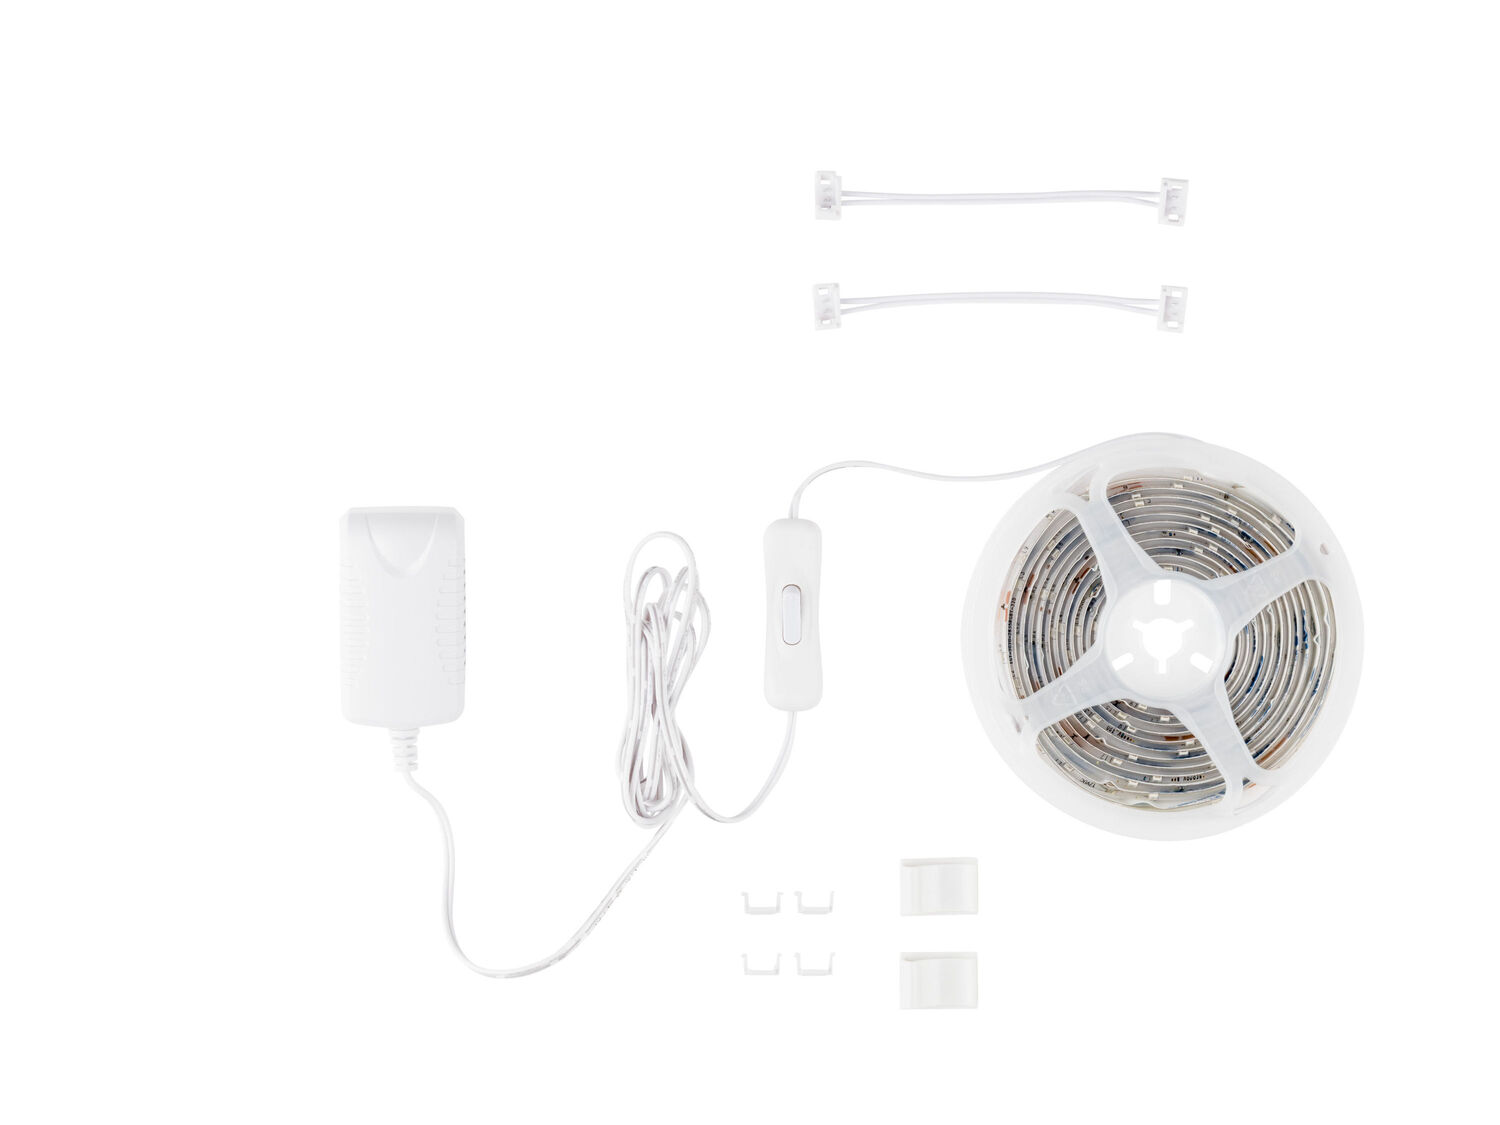 Striscia LED Tuv-sud-gs, prezzo 6.49 € 
3 m 
- Accorciabile a piacere e autoadesiva
- ...